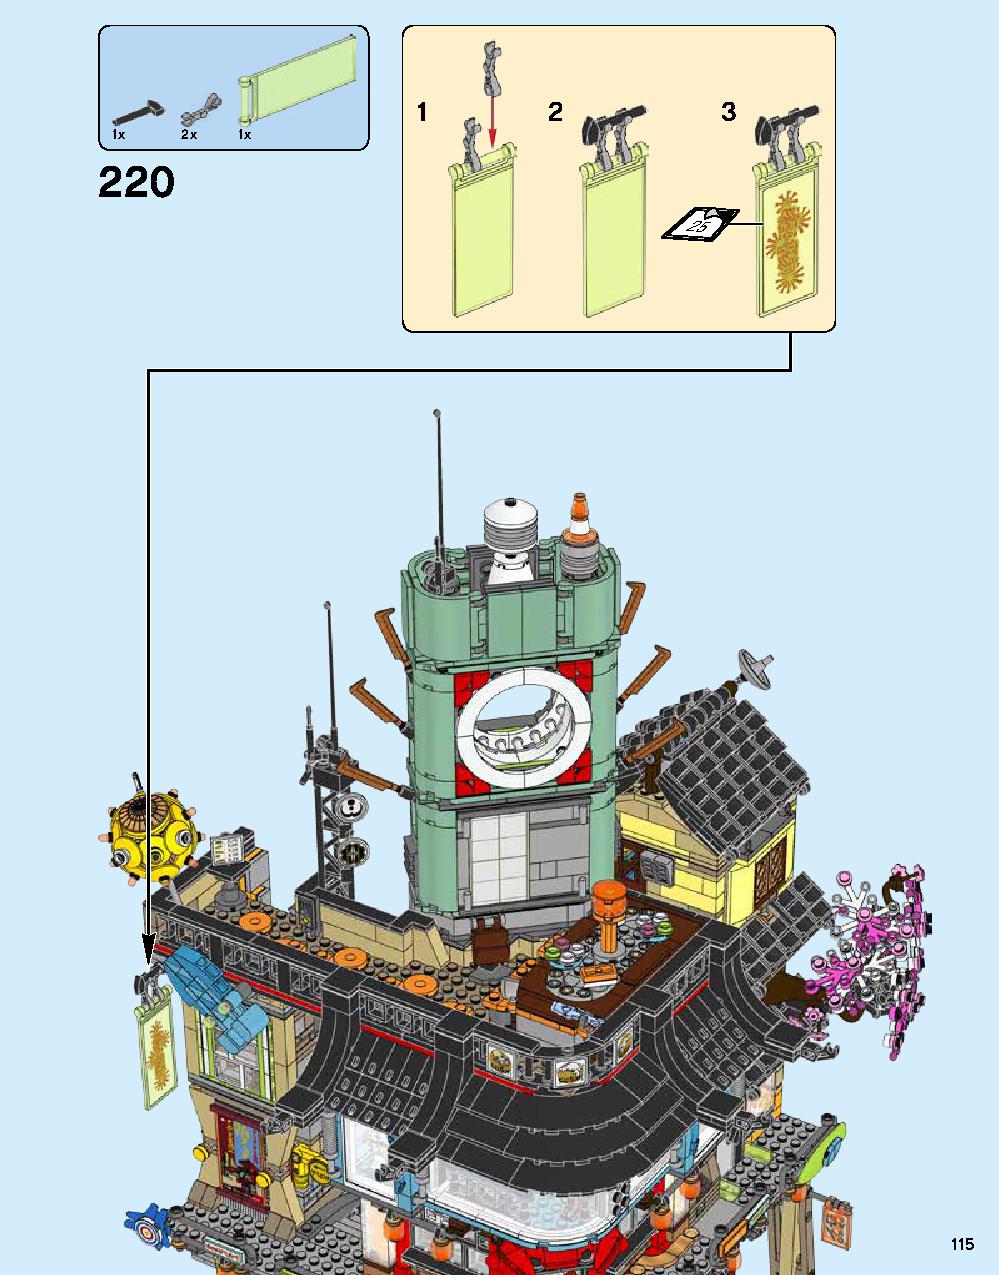 ニンジャゴー シティ 70620 レゴの商品情報 レゴの説明書・組立方法 115 page